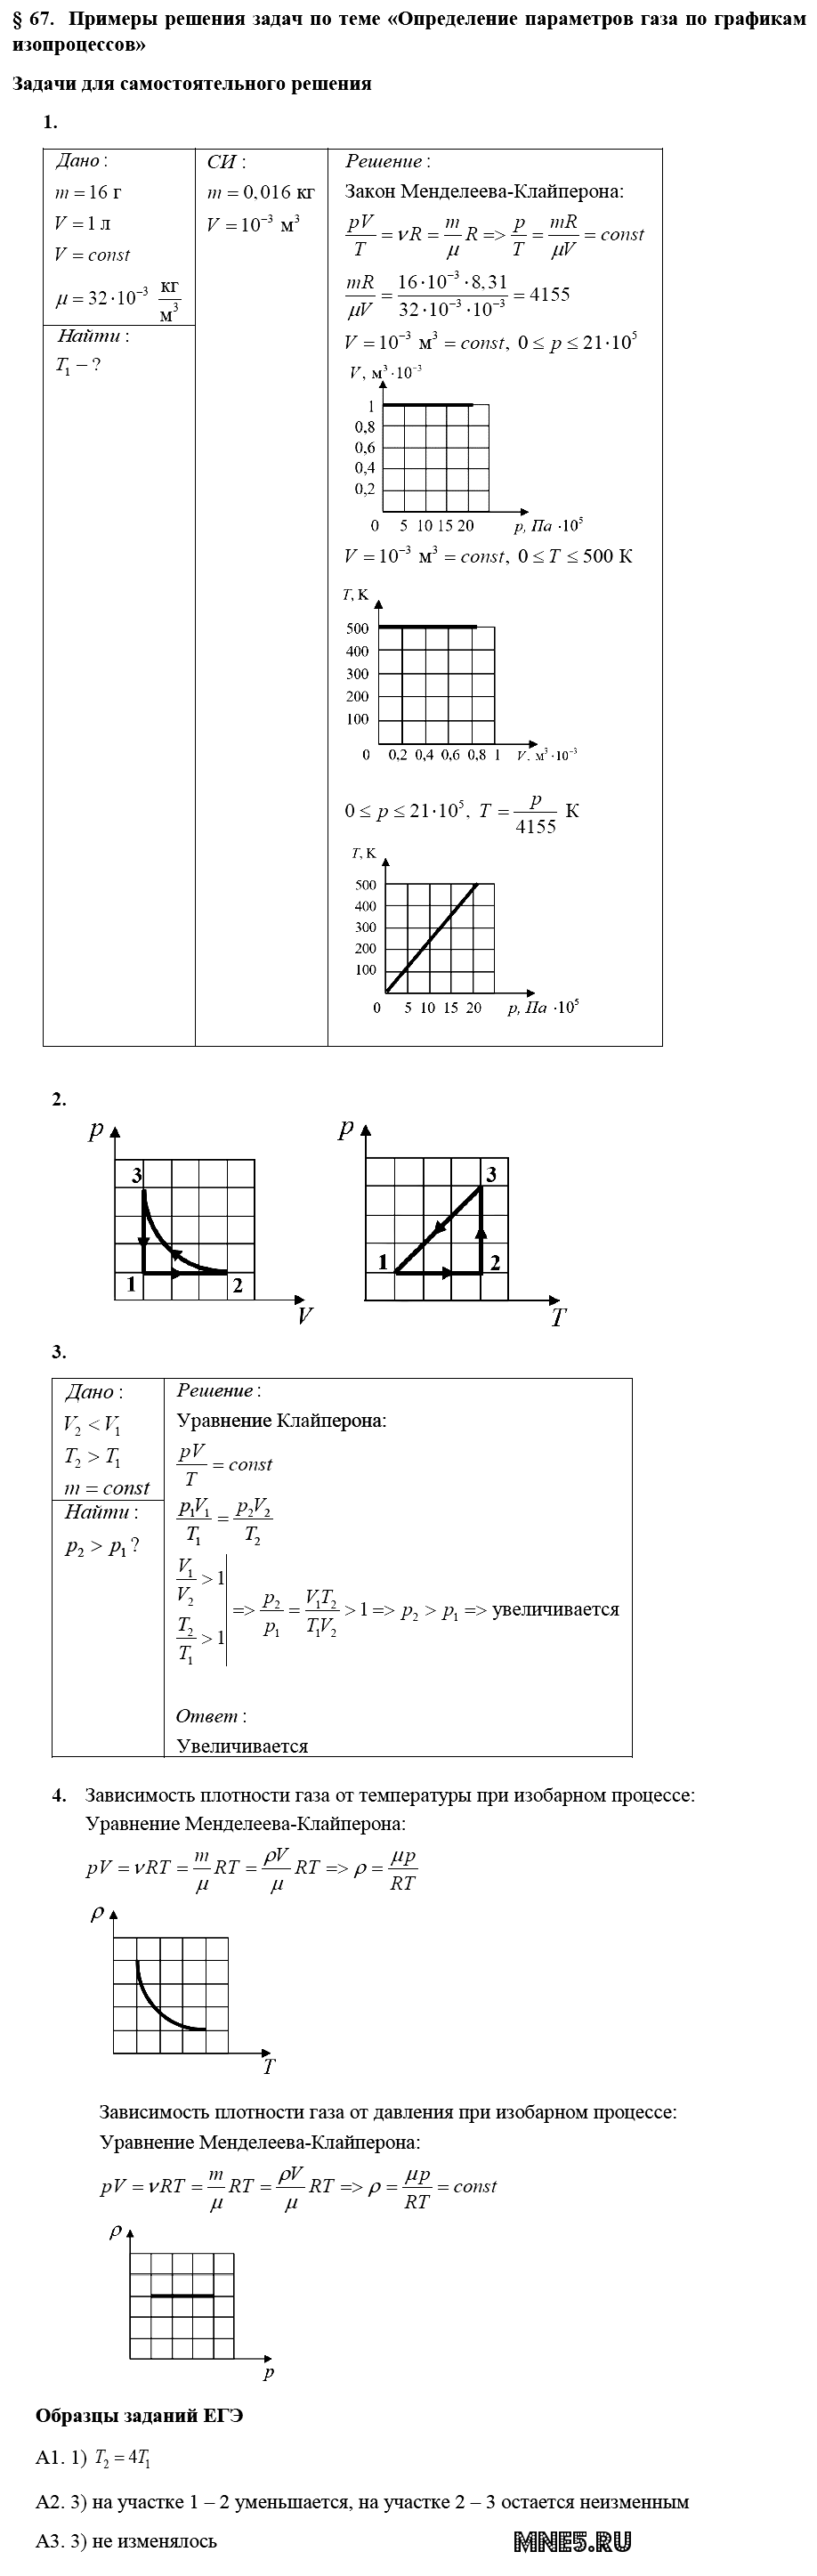 ГДЗ Физика 10 класс - §67. Примеры решения задач по теме - Определение параметров газа по графикам изопроцессов